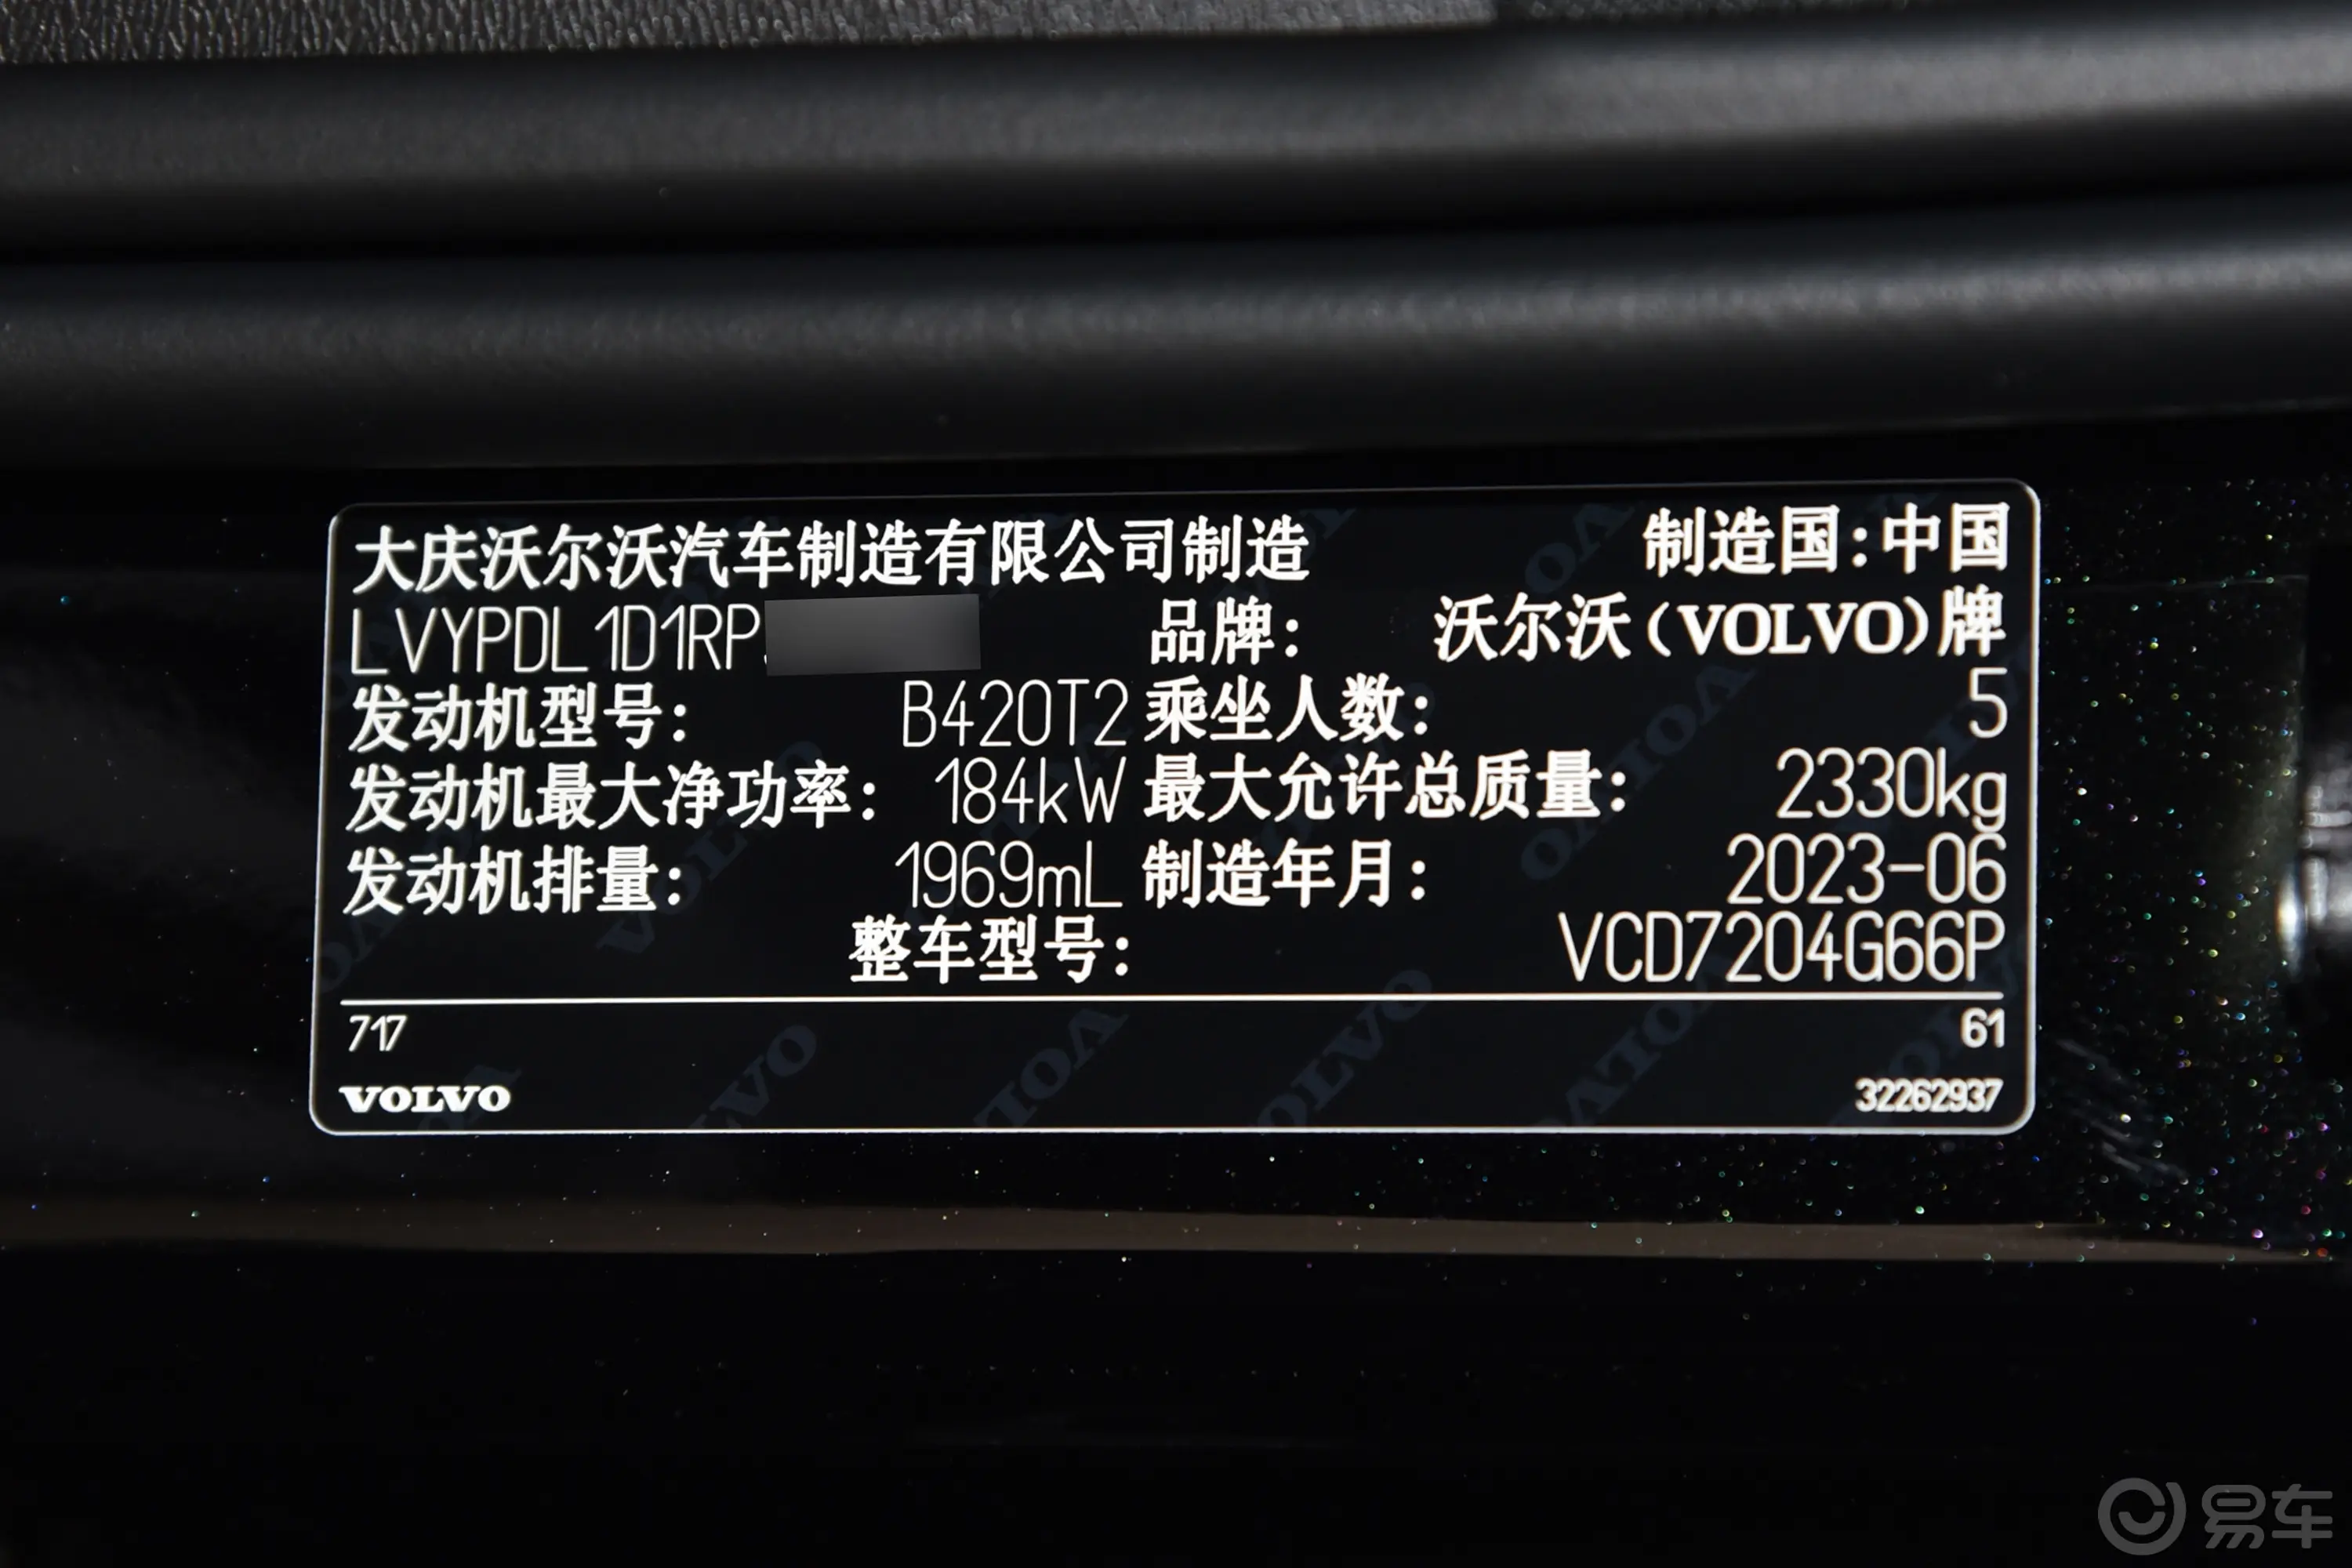 沃尔沃S90B5 智雅豪华版车辆信息铭牌